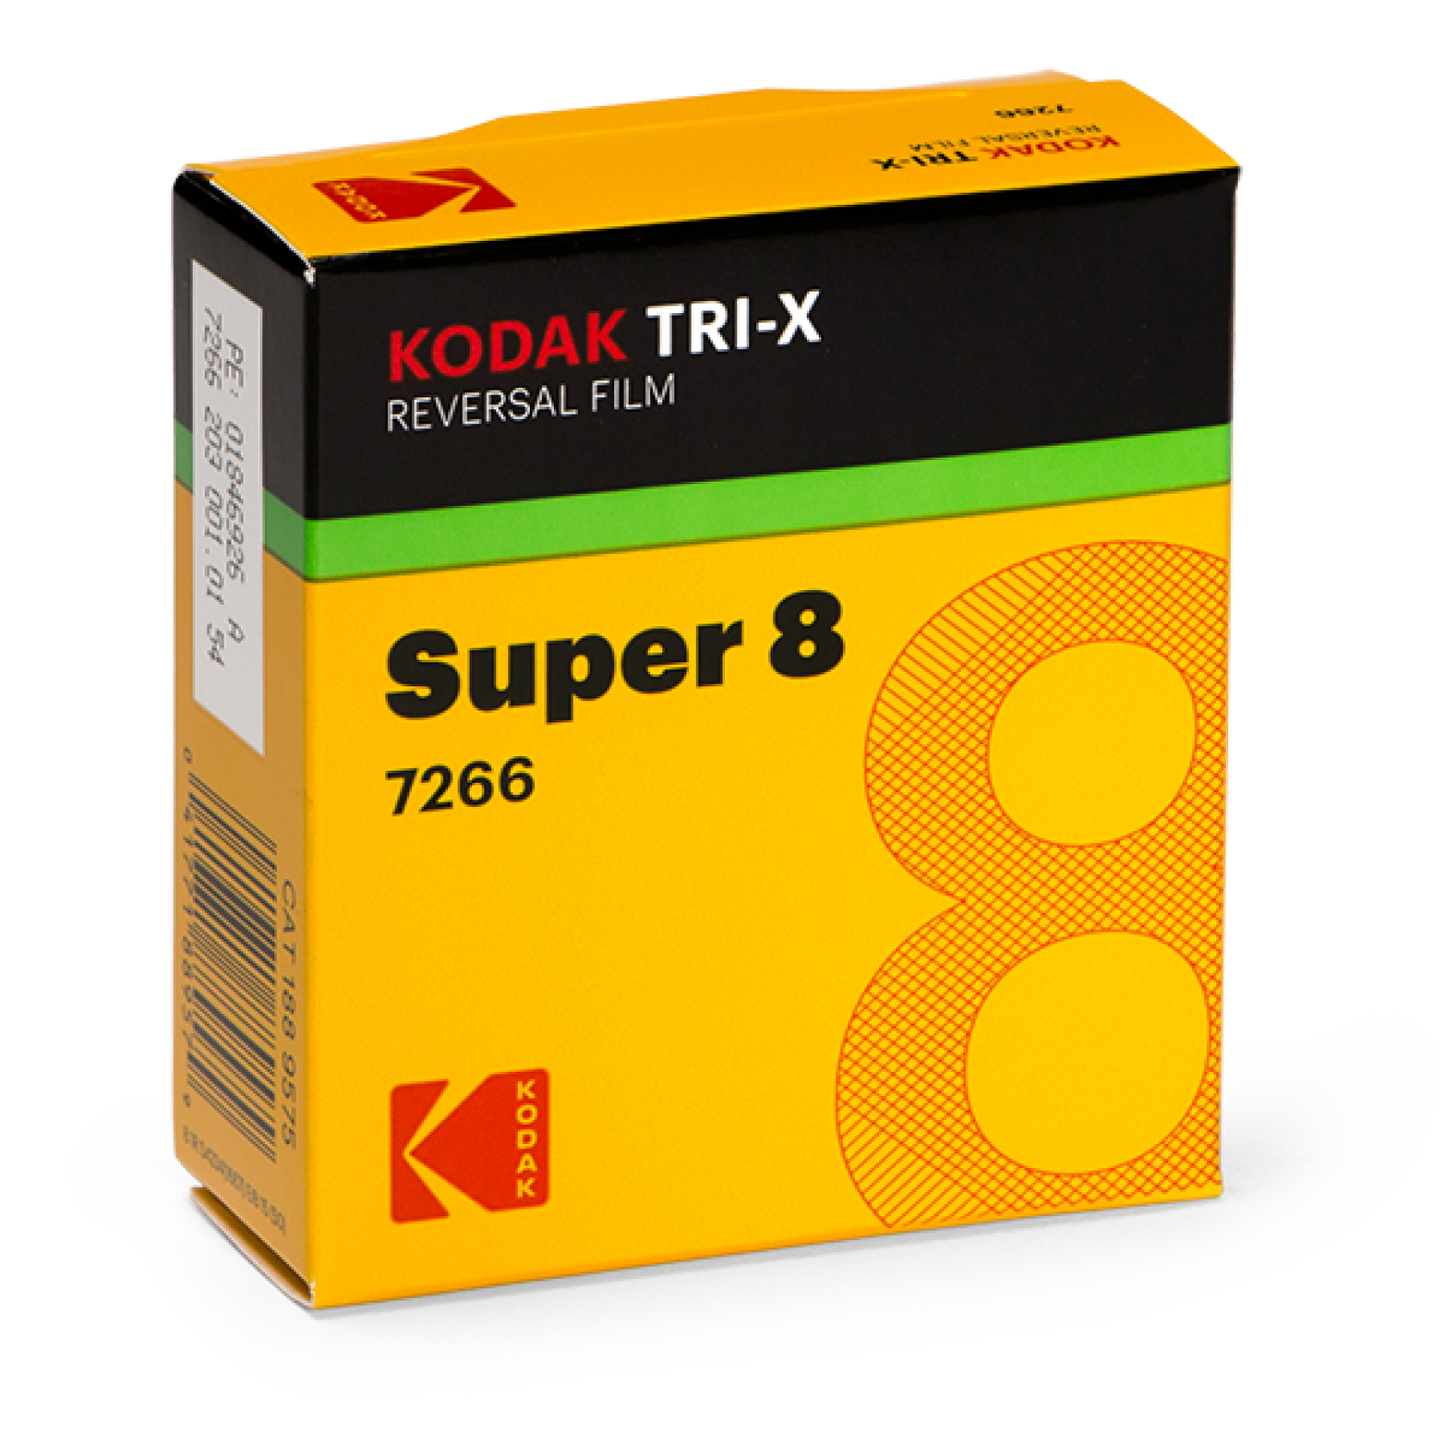 Kodak Tri-X super 8 film